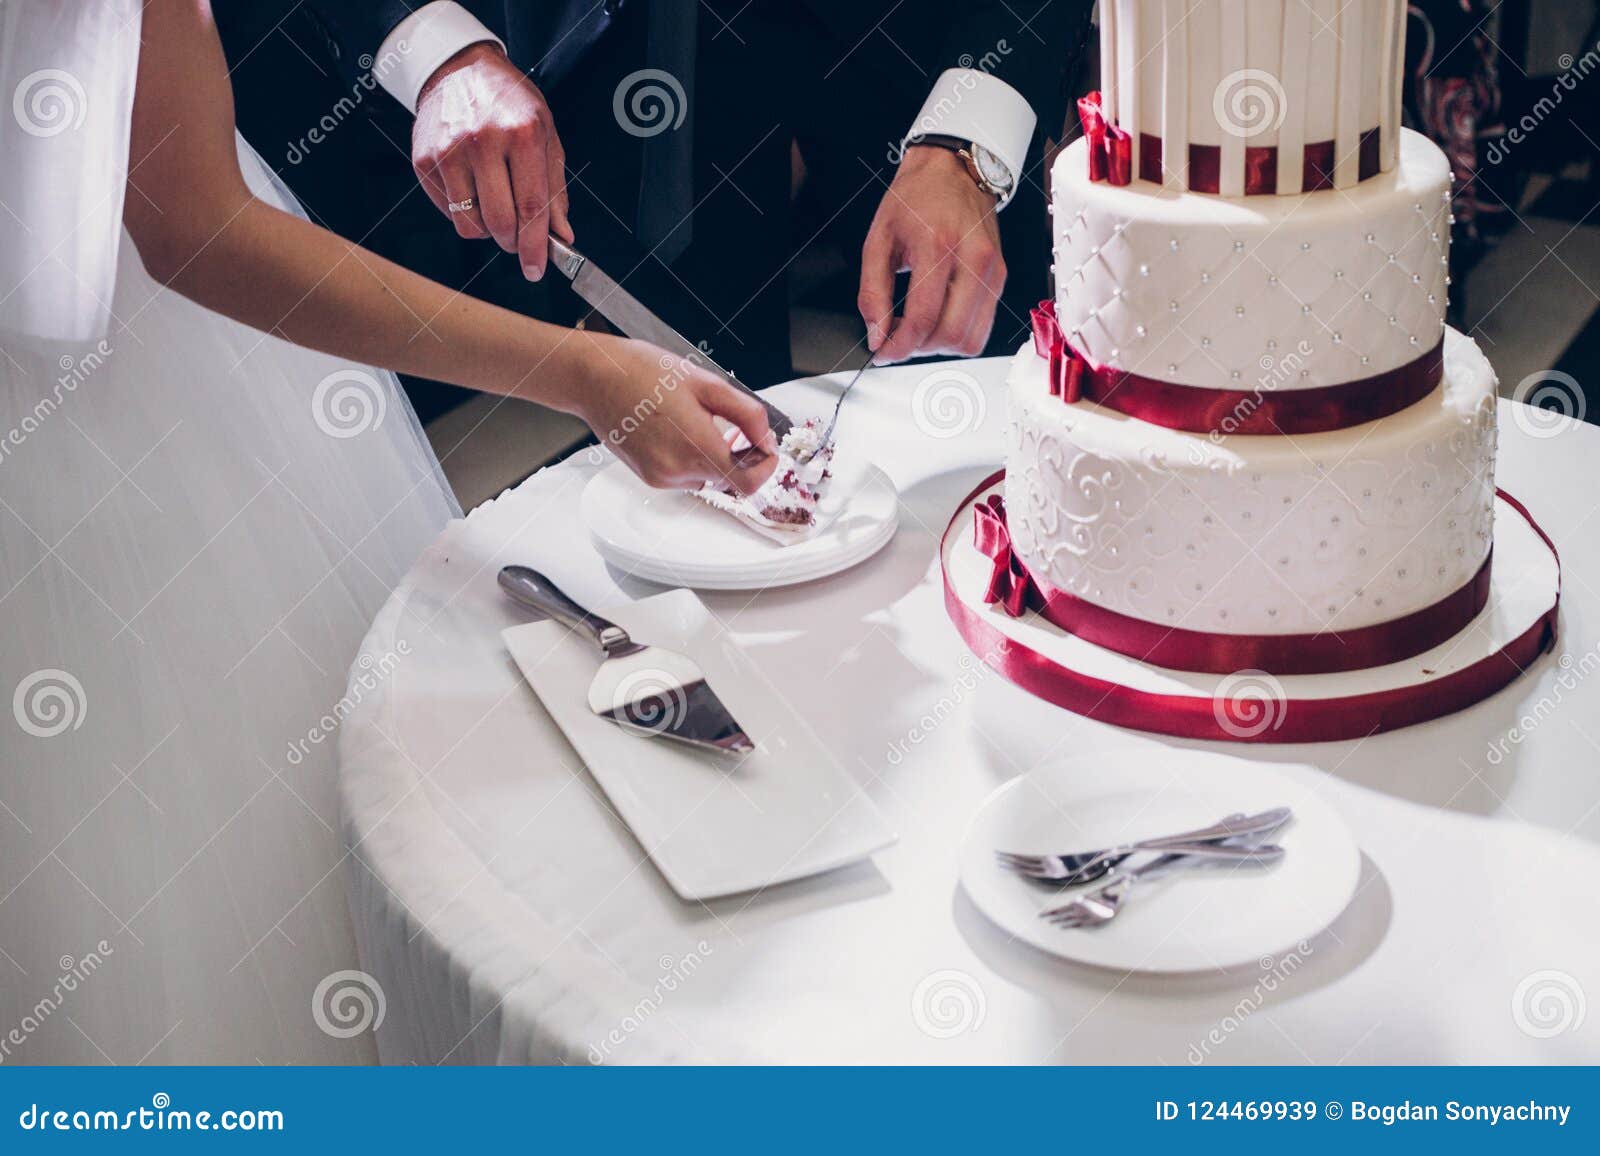 吃蛋糕的年轻新娘 库存照片. 图片 包括有 头发, 户内, 快乐, 长度, 蛋糕, 射击, 甜甜, 礼服 - 48918306